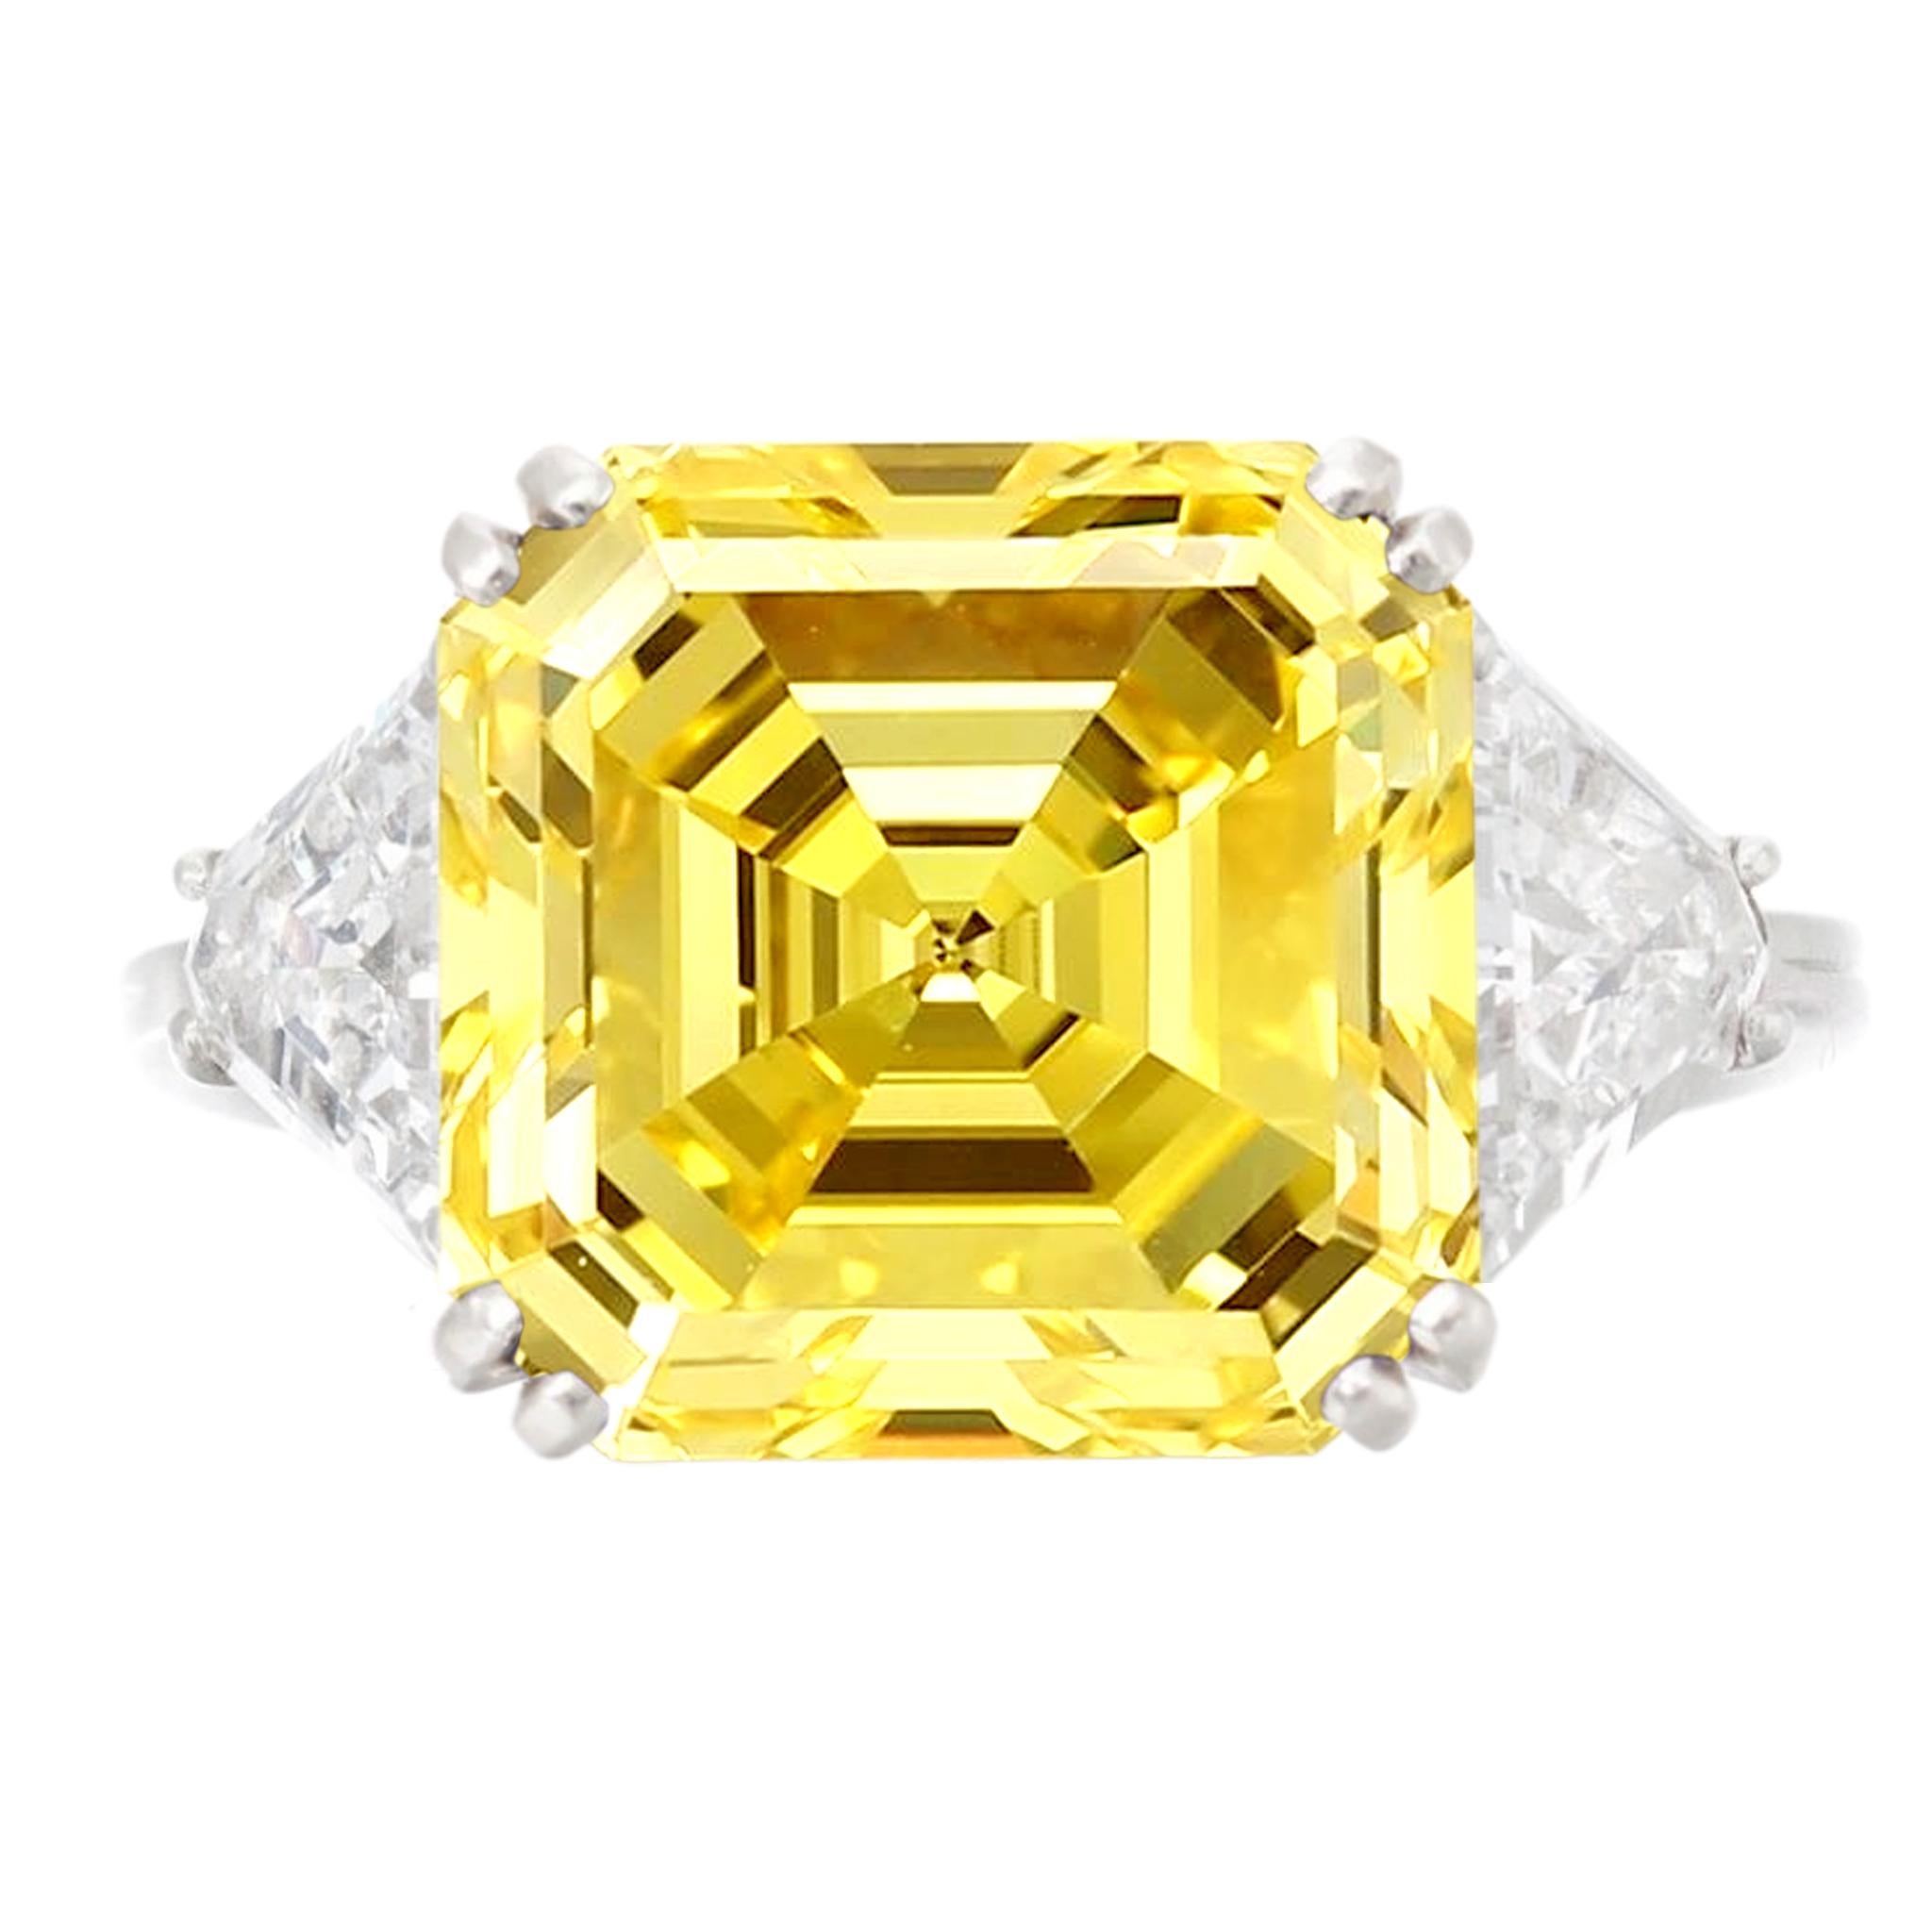 Fabriquée par la maison Antinori Di Sanpietro, cette bague de fiançailles est une merveille de luxe et de distinction. Il met en valeur un resplendissant diamant de 5 carats de taille Asscher, certifié GIA et imprégné d'une captivante teinte jaune